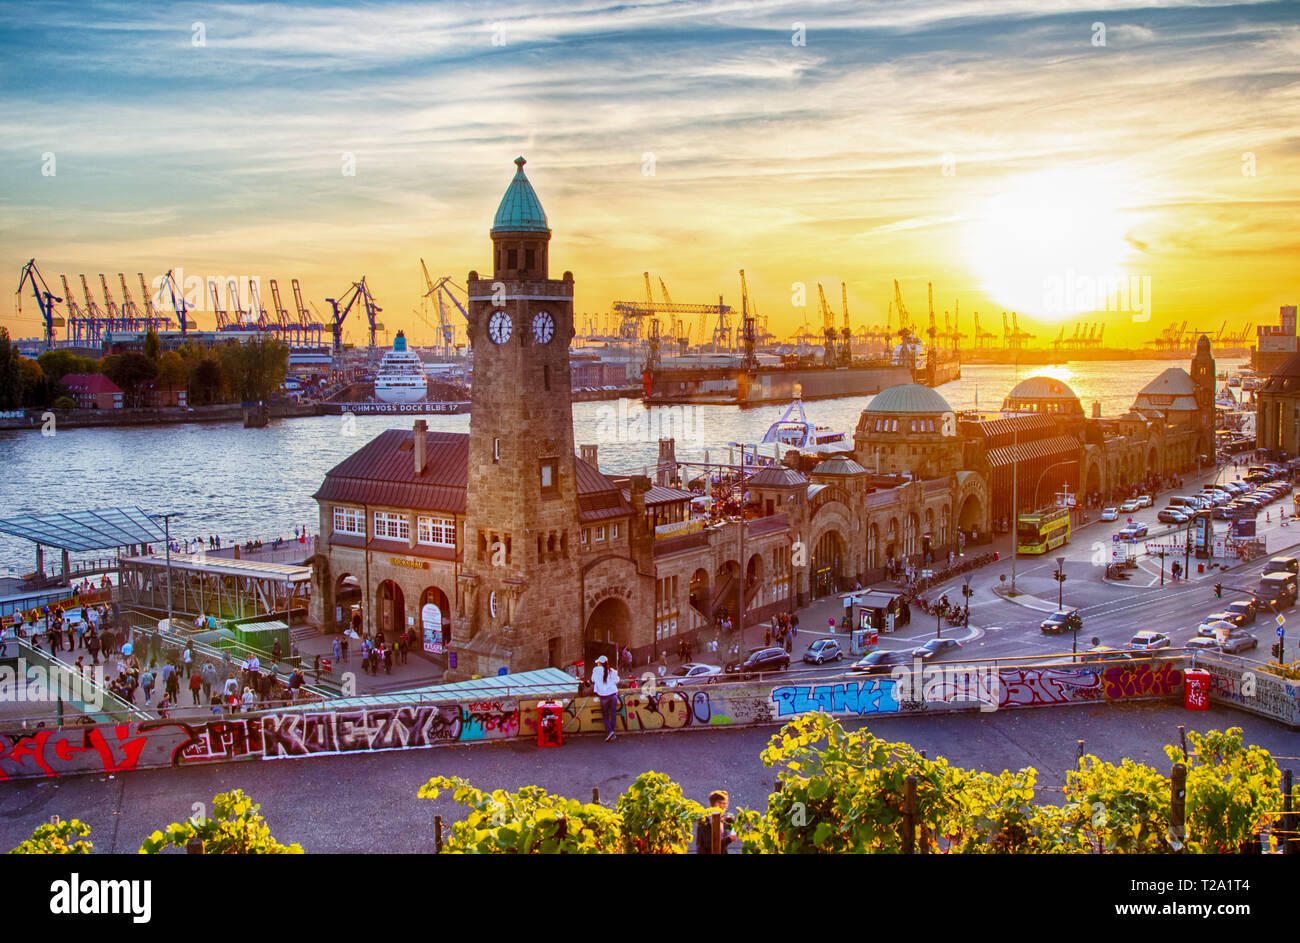 Sonnenuntergang über die St. Pauli Landungsbrücken oder Landungsbrücken im Hafen von Hamburg, Deutschland. Stockfoto